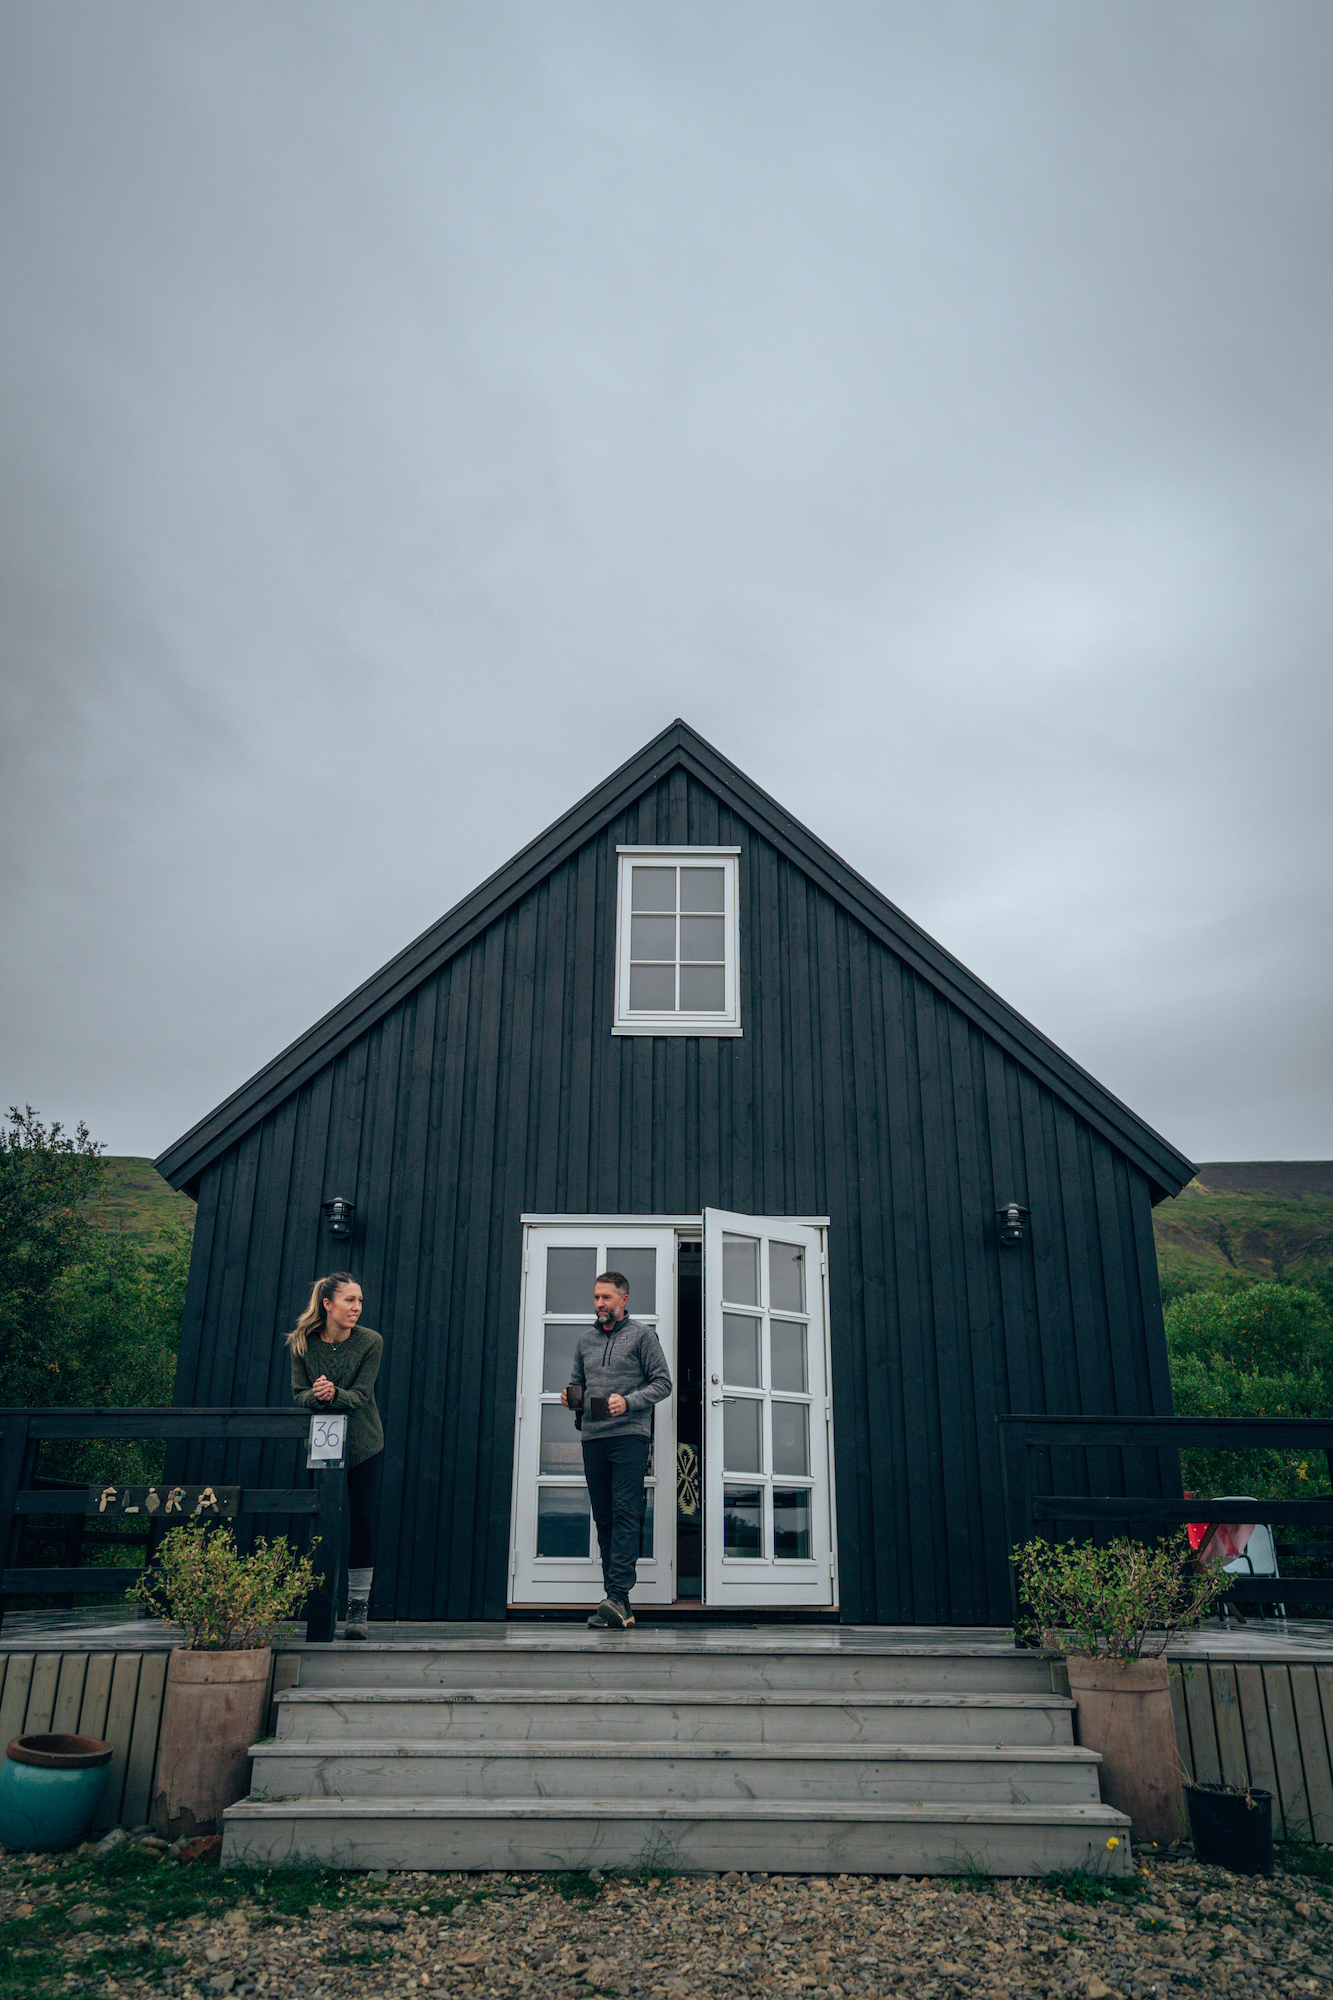 Flora Cottage - Egilsstaðir